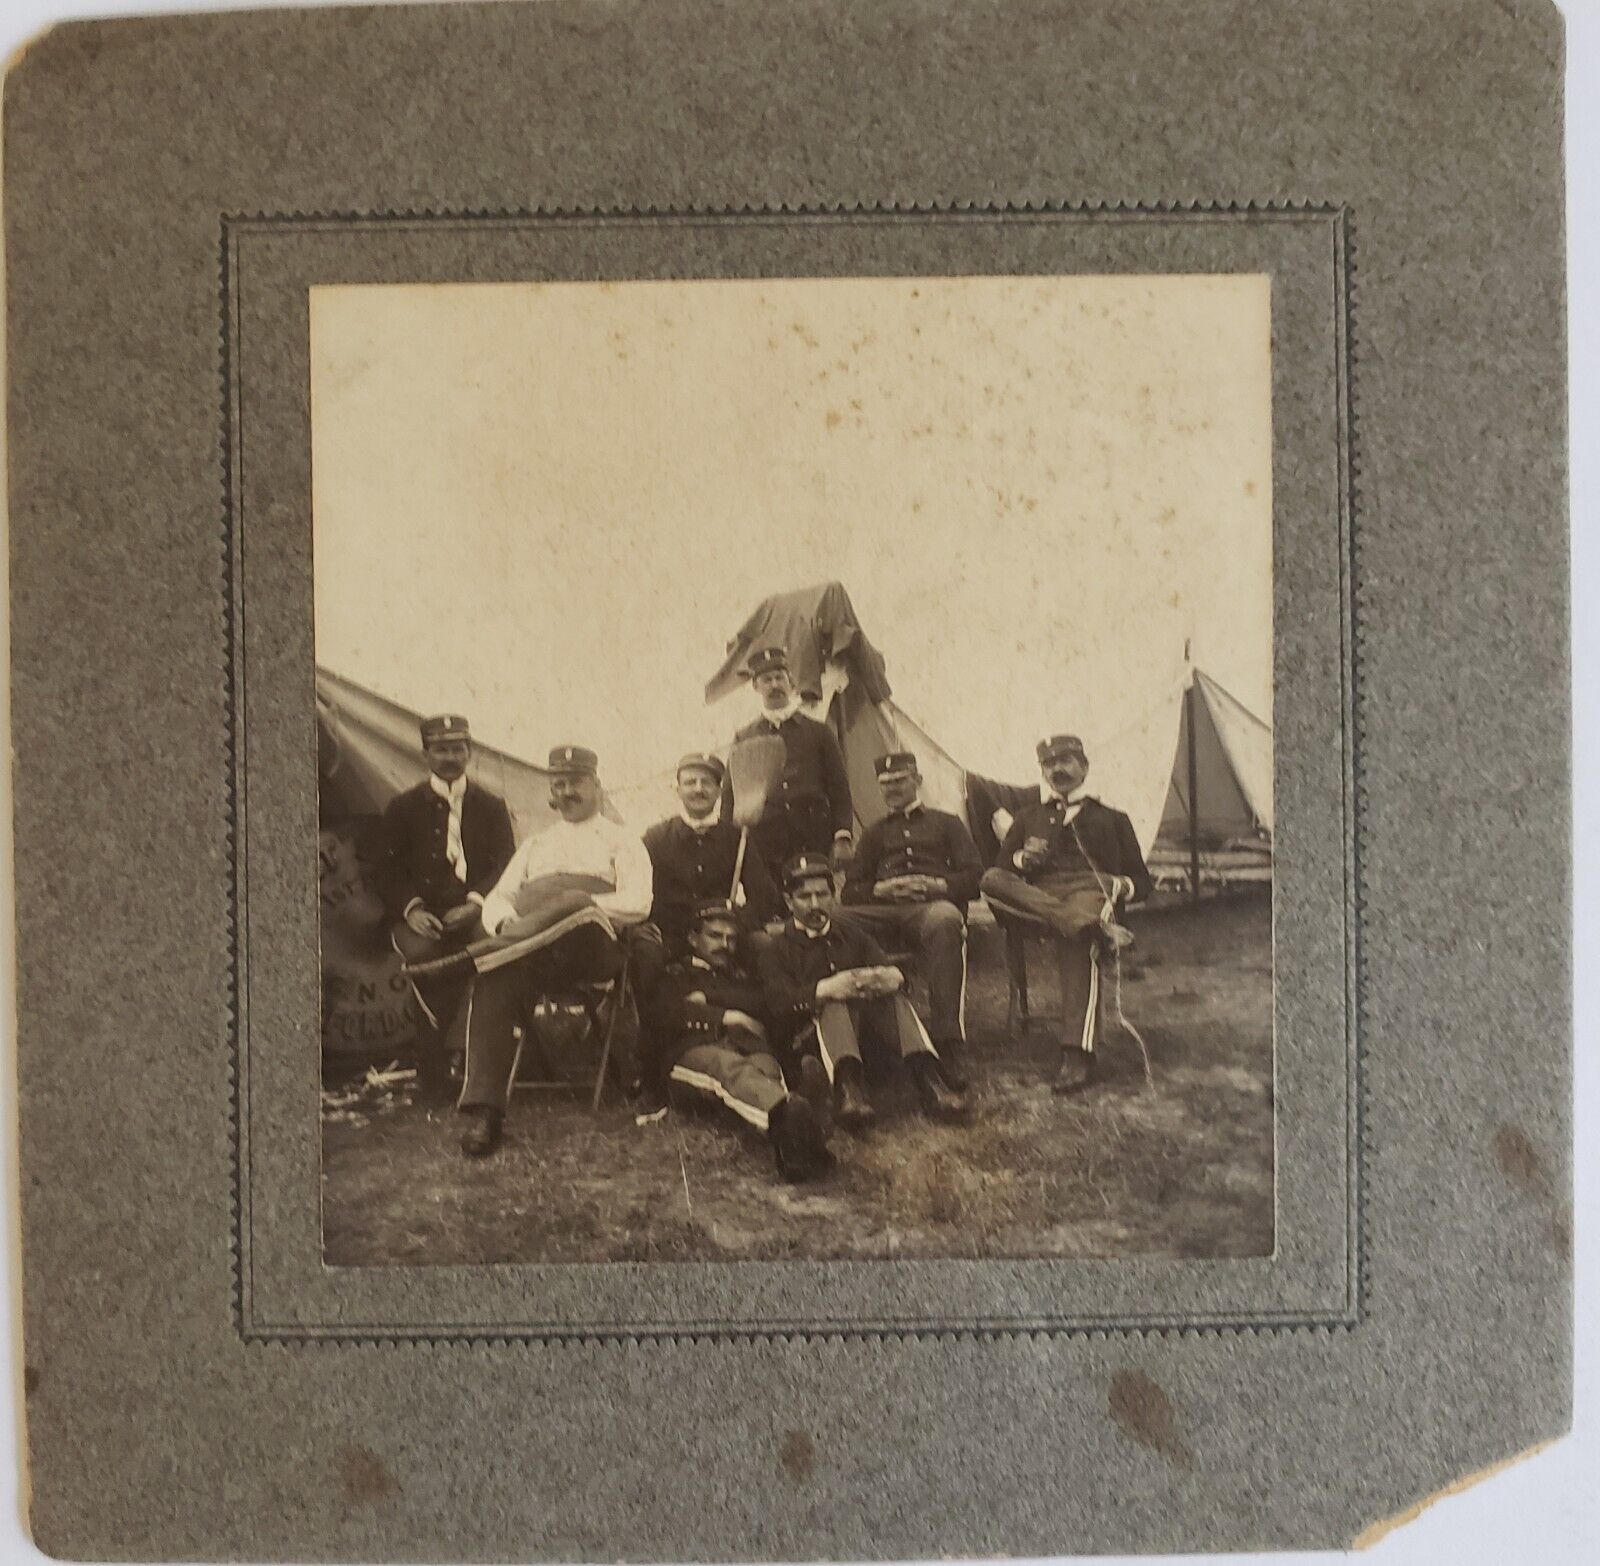 Unique Antique  Photograph  Civil War Soldiers 1862 Virginia Camp?